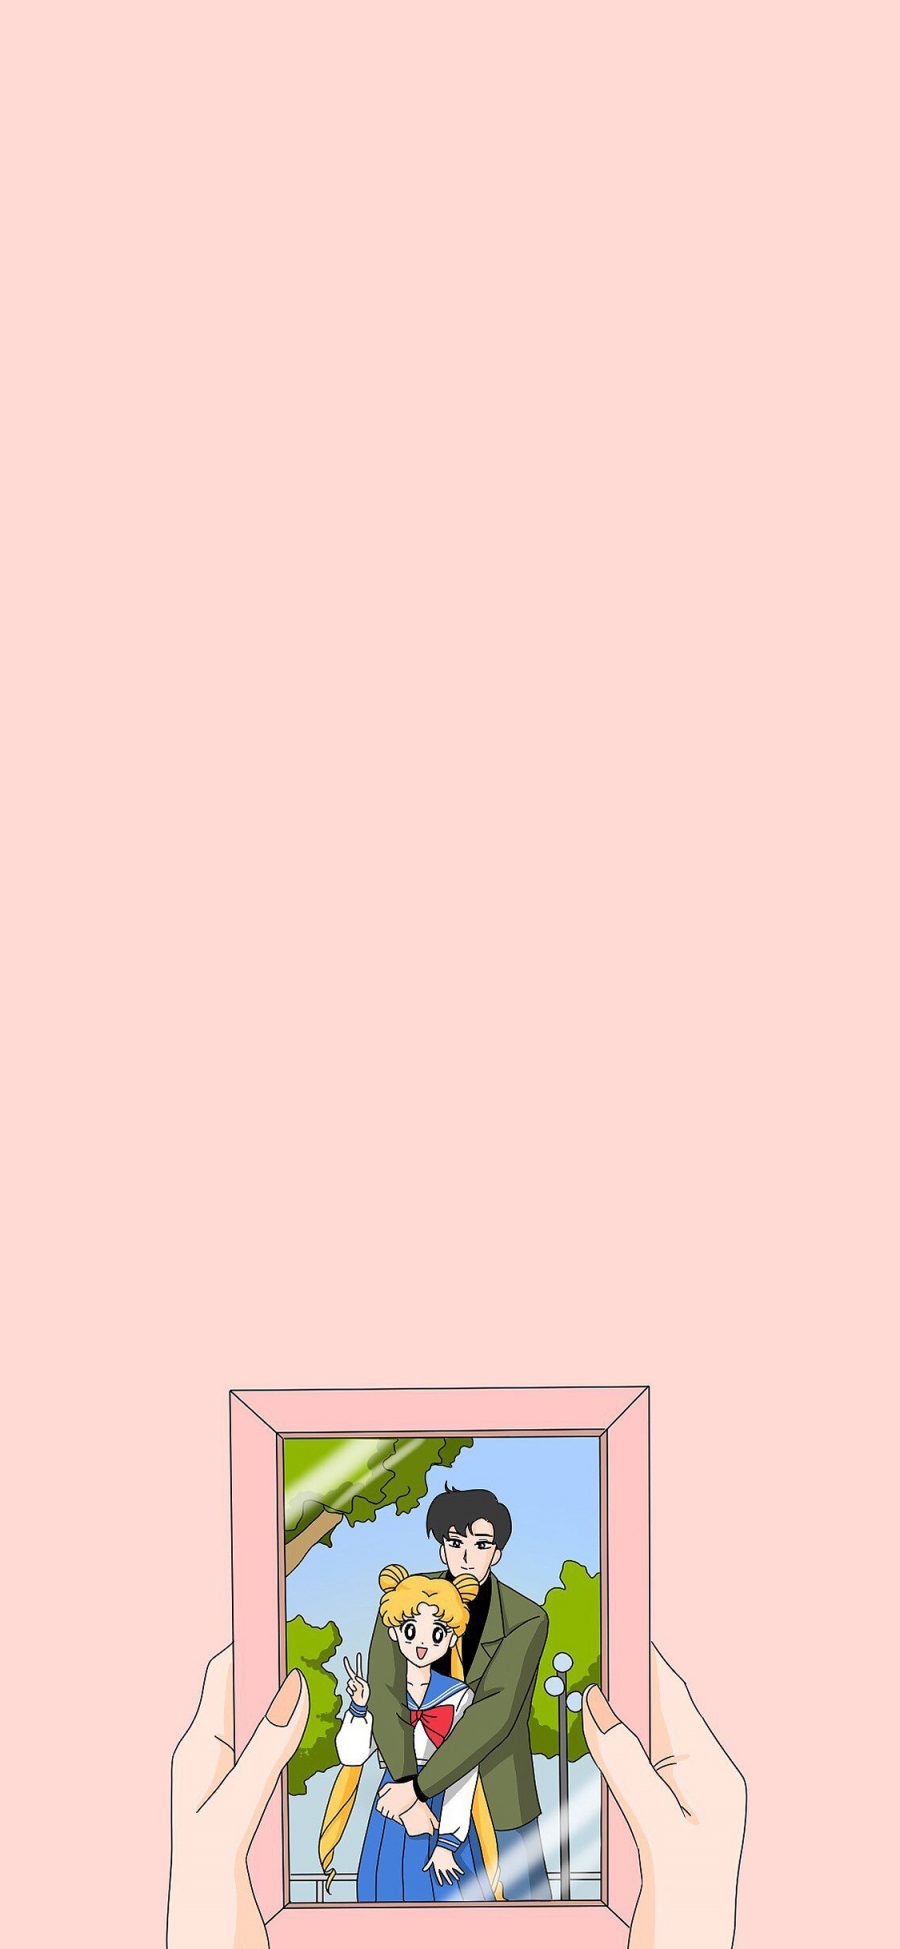 [2436×1125]美少女战士 情侣 动画 粉色 爱情 相片 苹果手机动漫壁纸图片